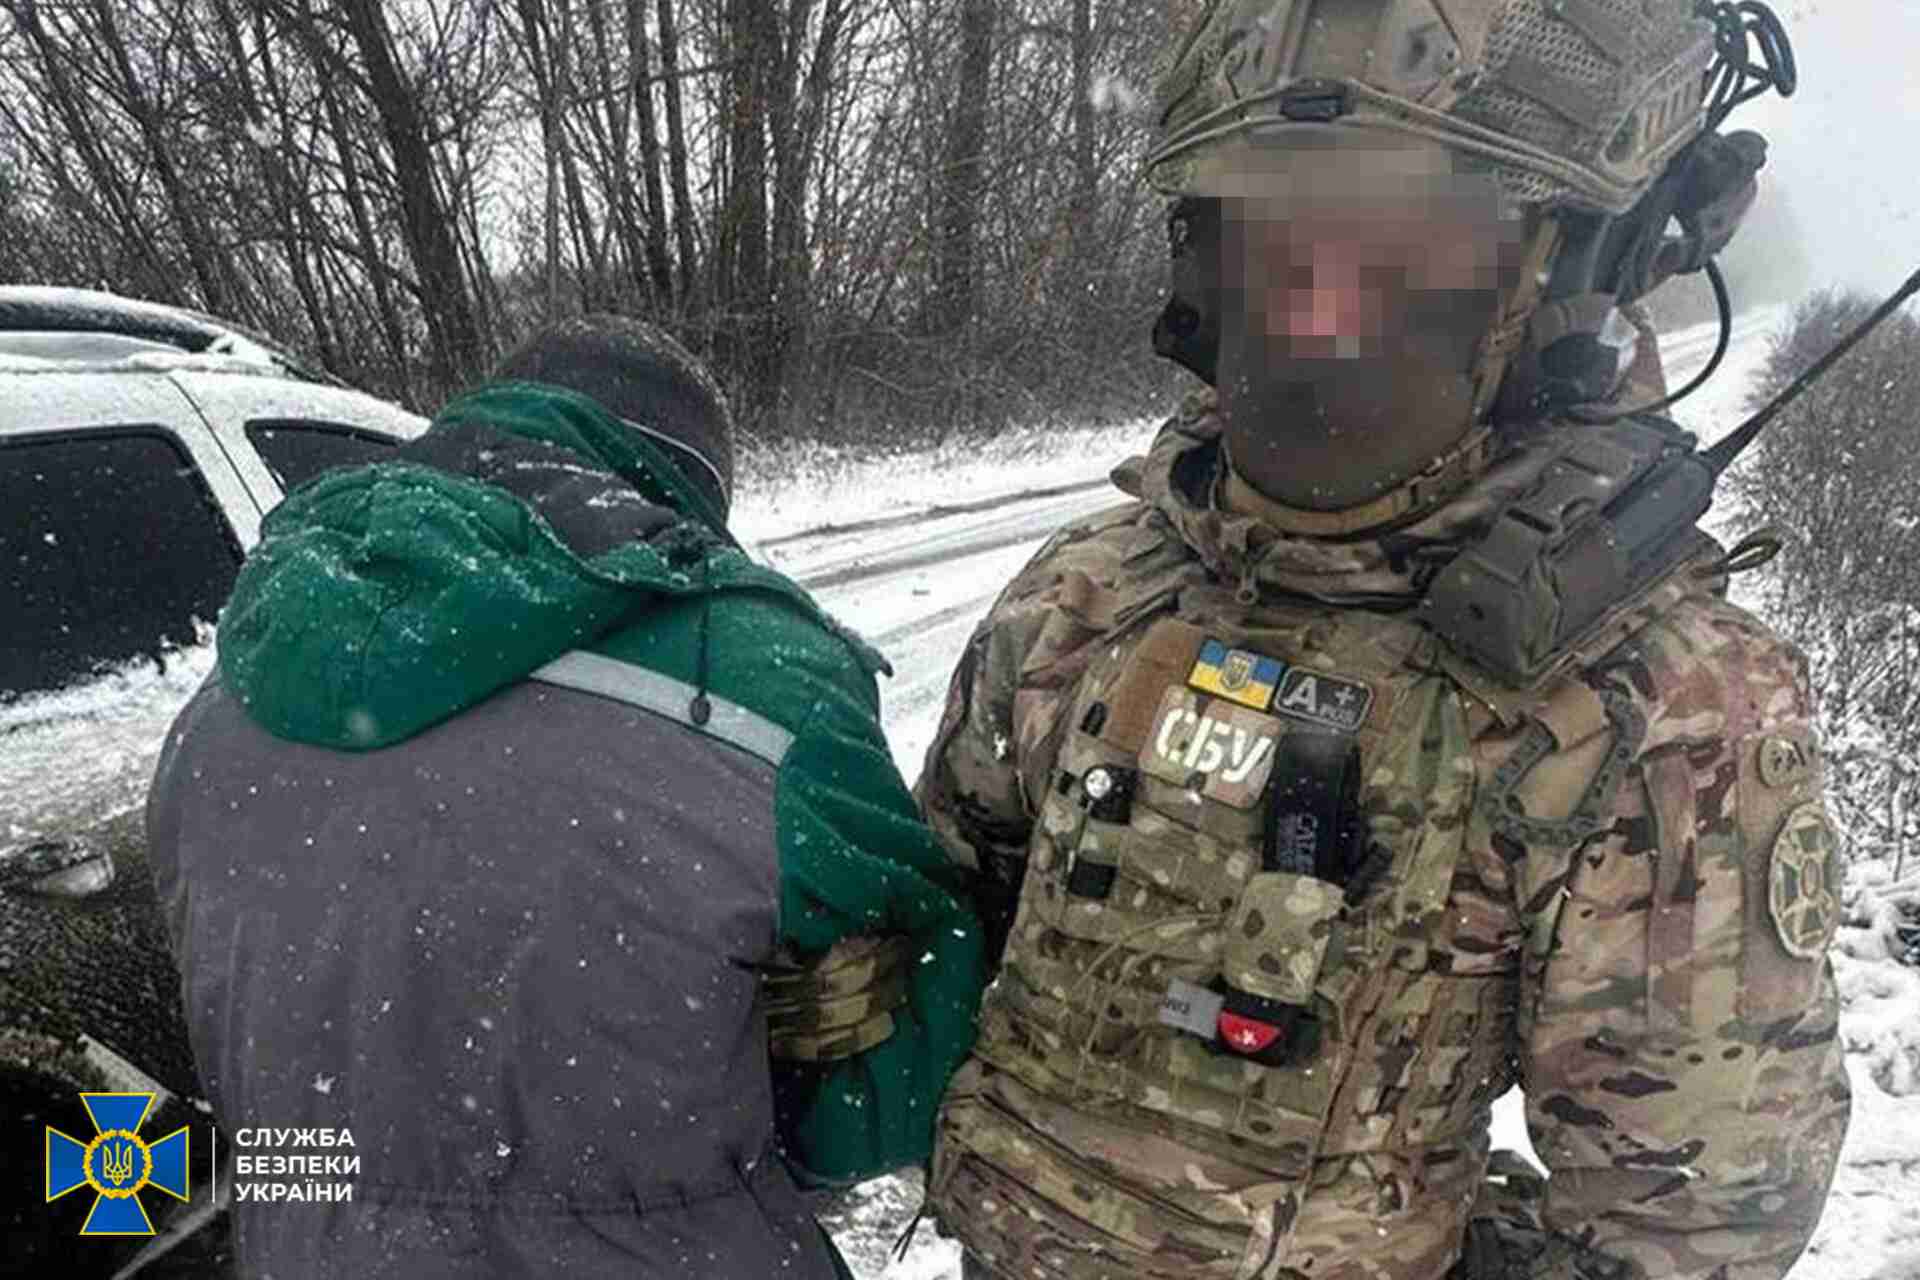 Спецслужби затримали українця, який «зливав» ворогу місця базування підрозділів СБУ та Нацполіції (ФОТО)